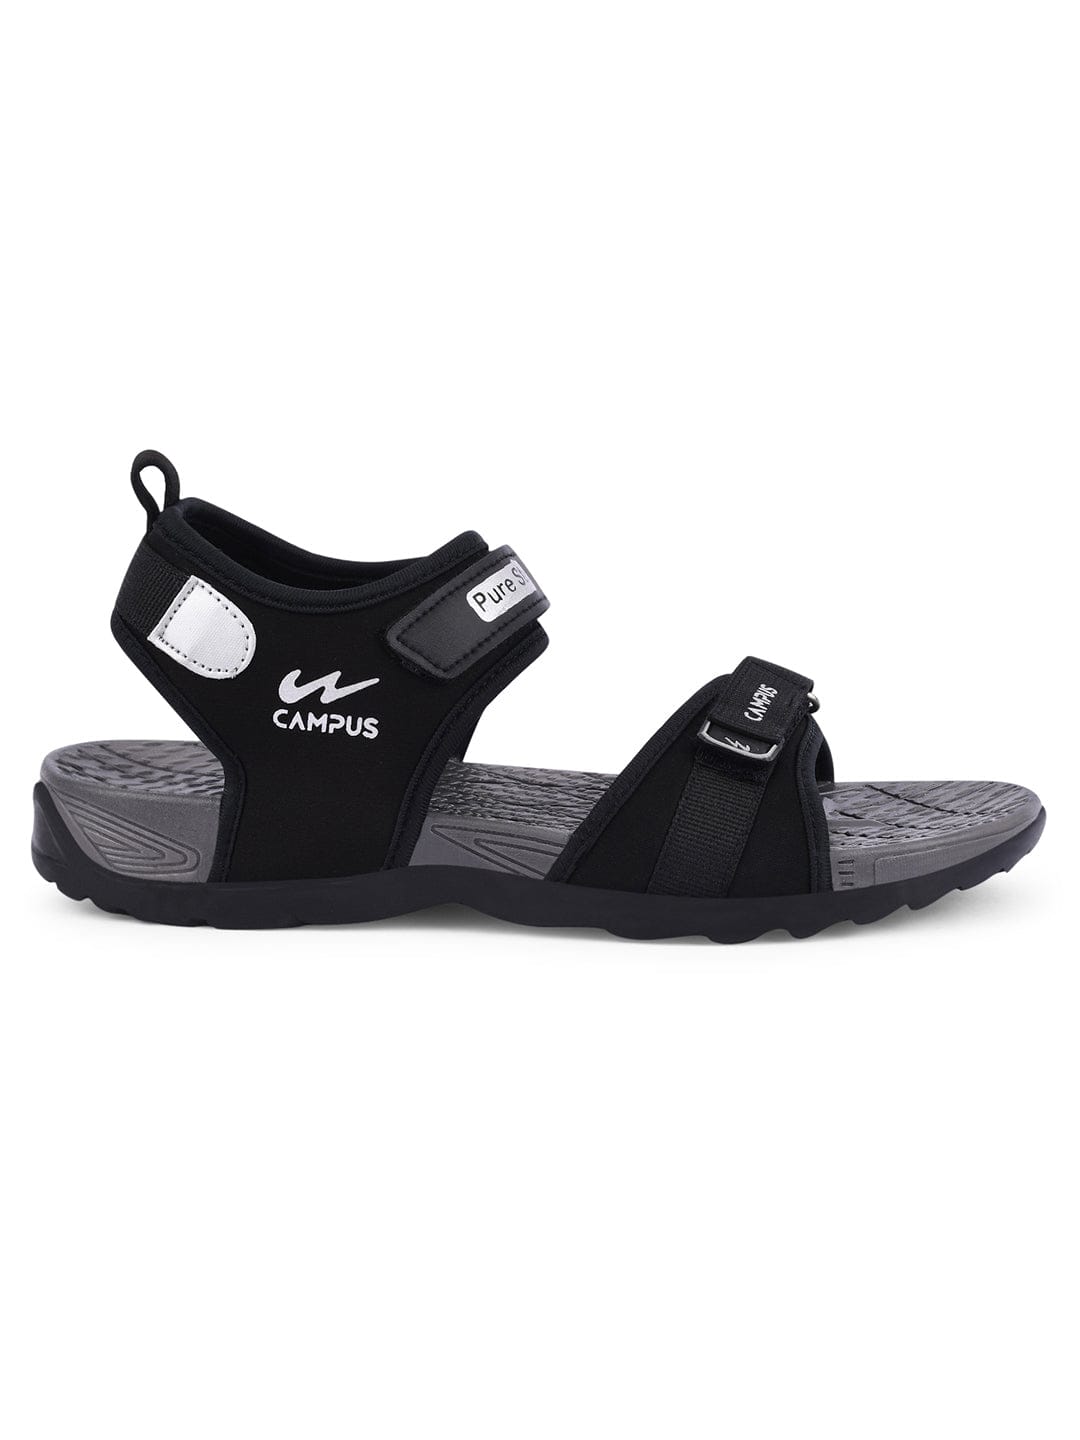 Buy Brown Casual Sandals for Men by EL PASO Online  Ajiocom